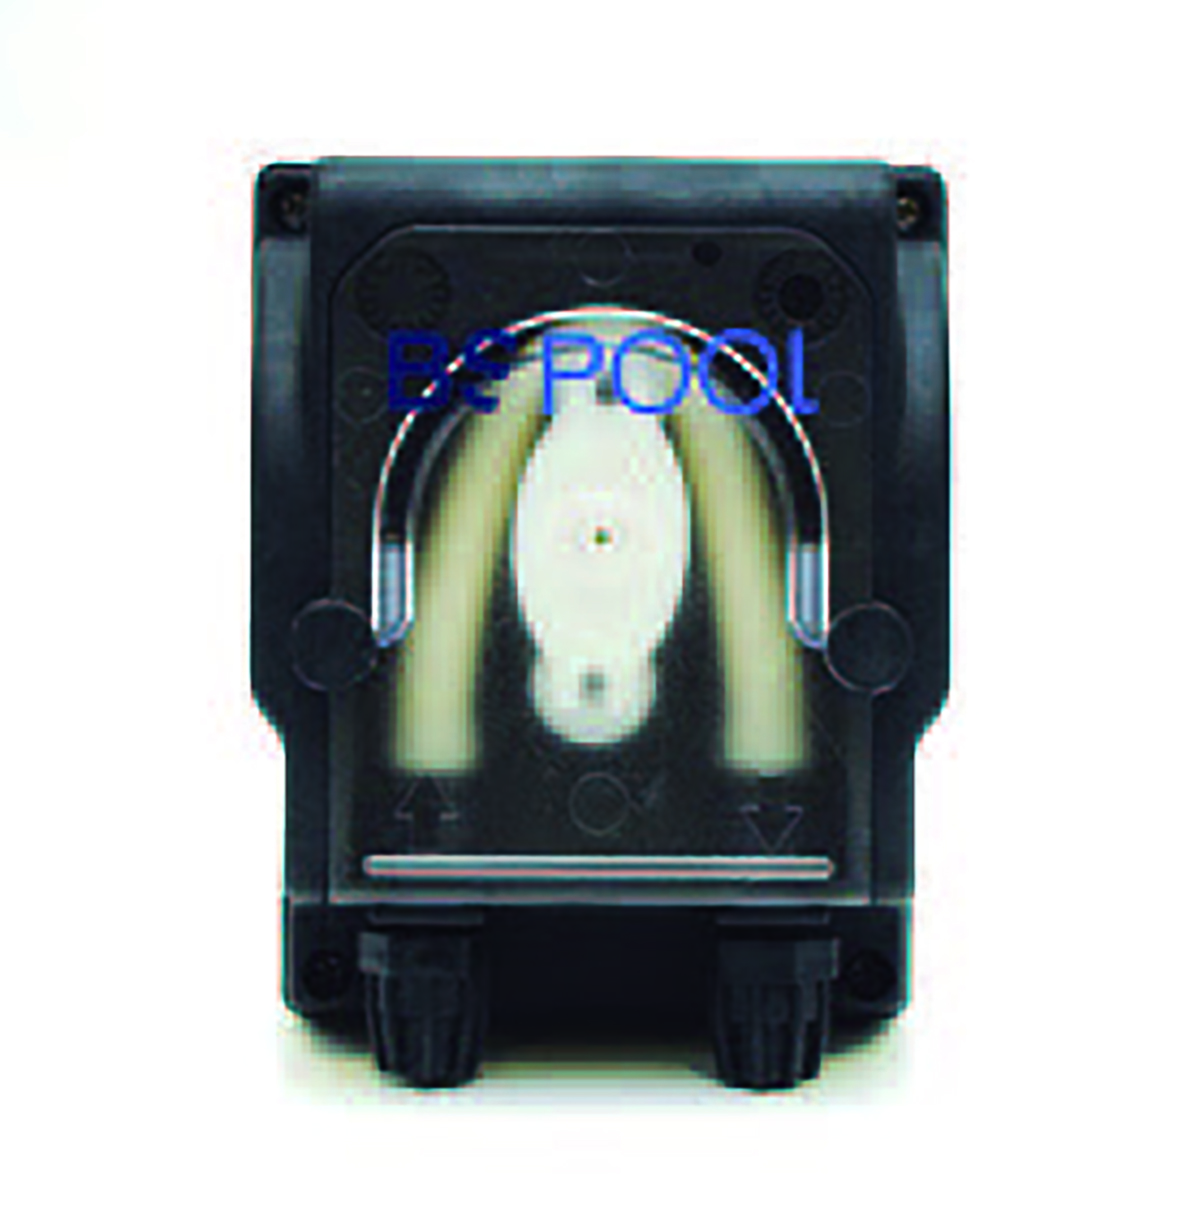  Sensor pH inkl. Sensorhalter und Dosierpumpe, ohne Anbohrschelle